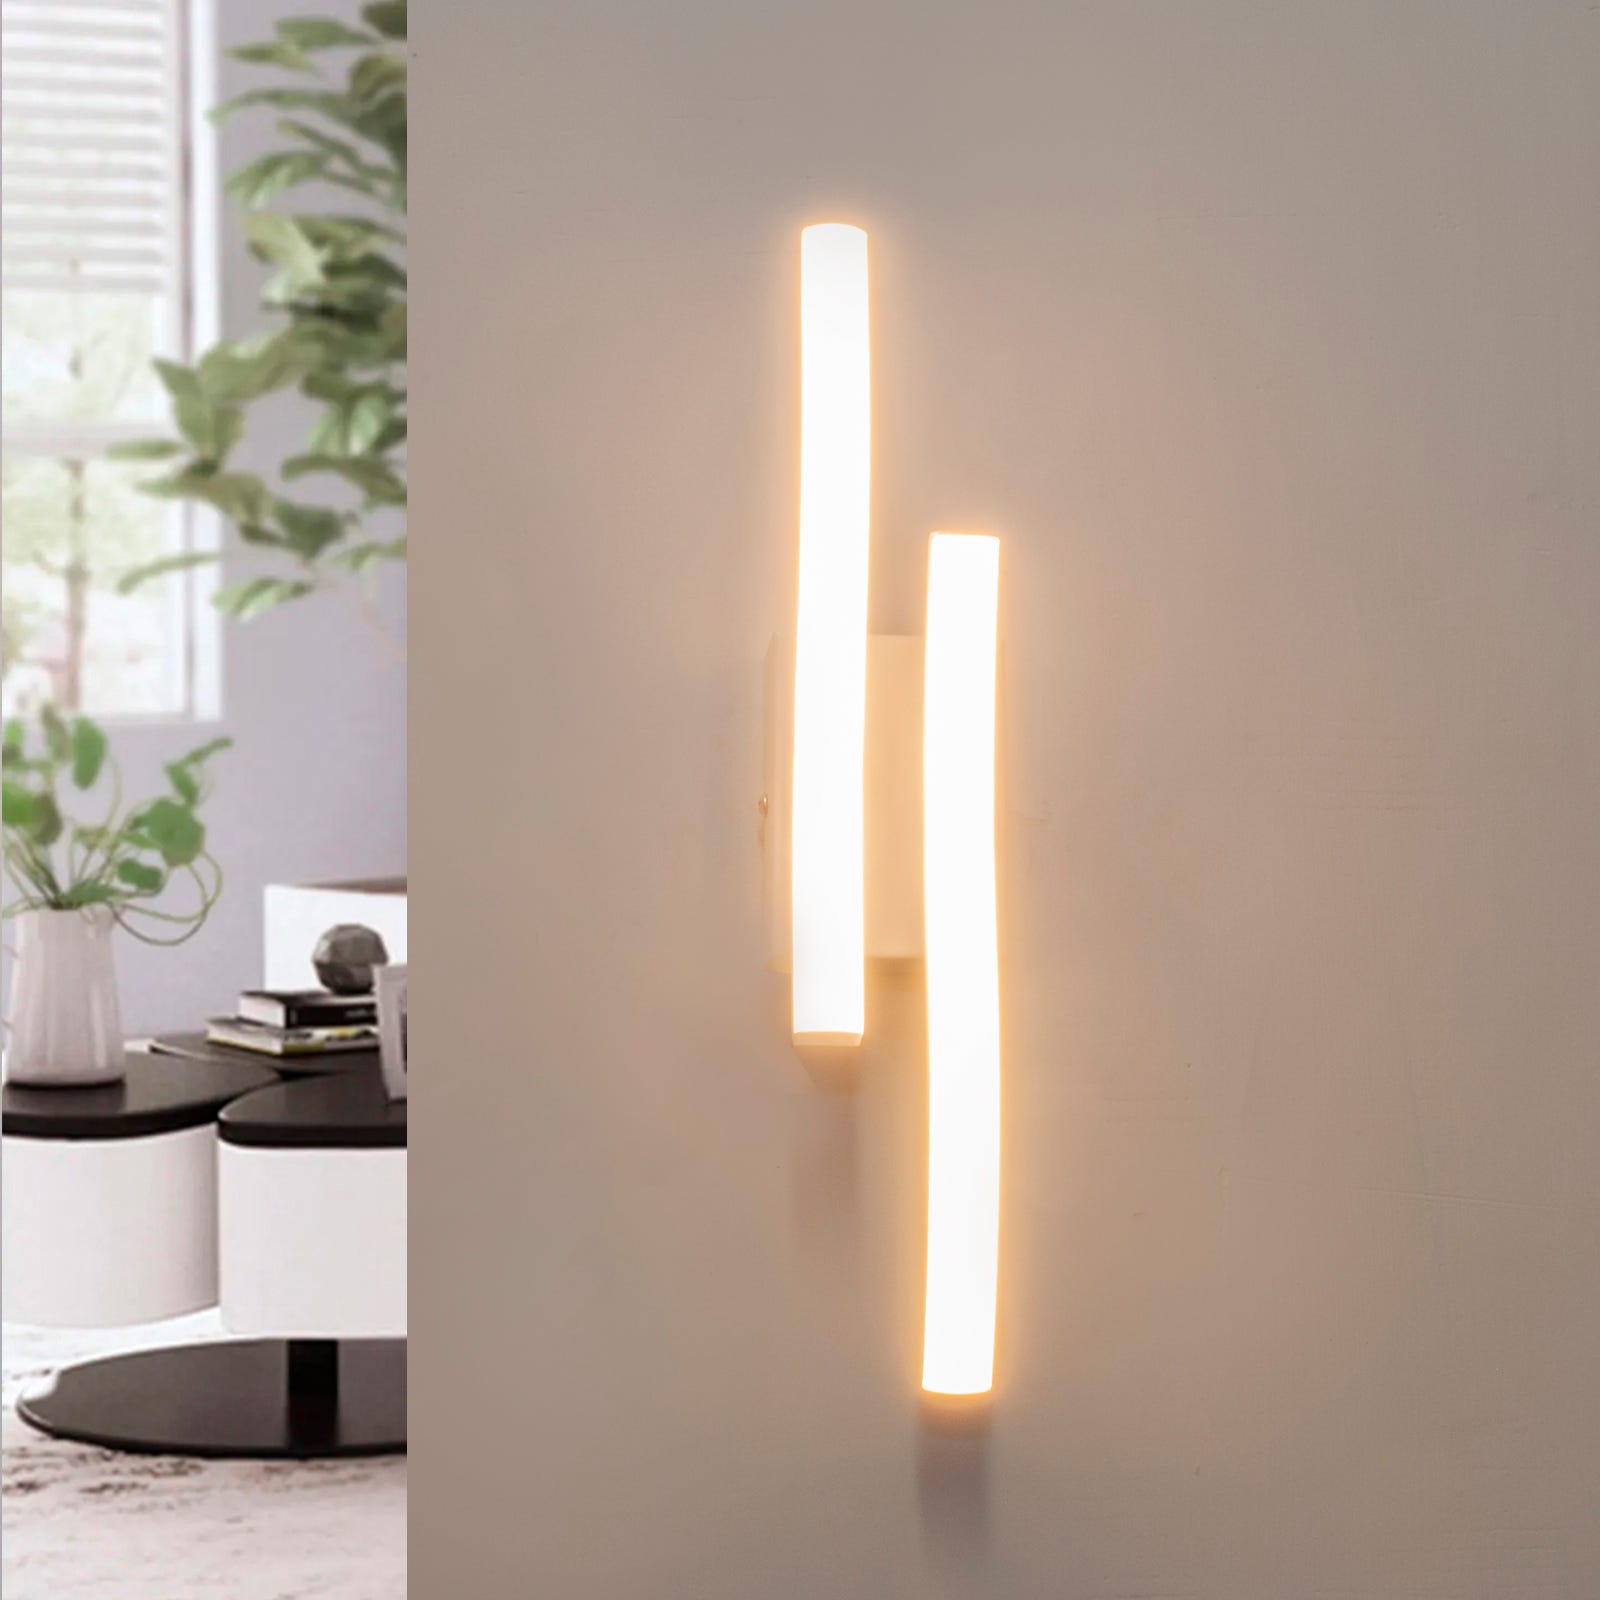 Applique murale moderne blanche LED 10W lumière stylisée table de